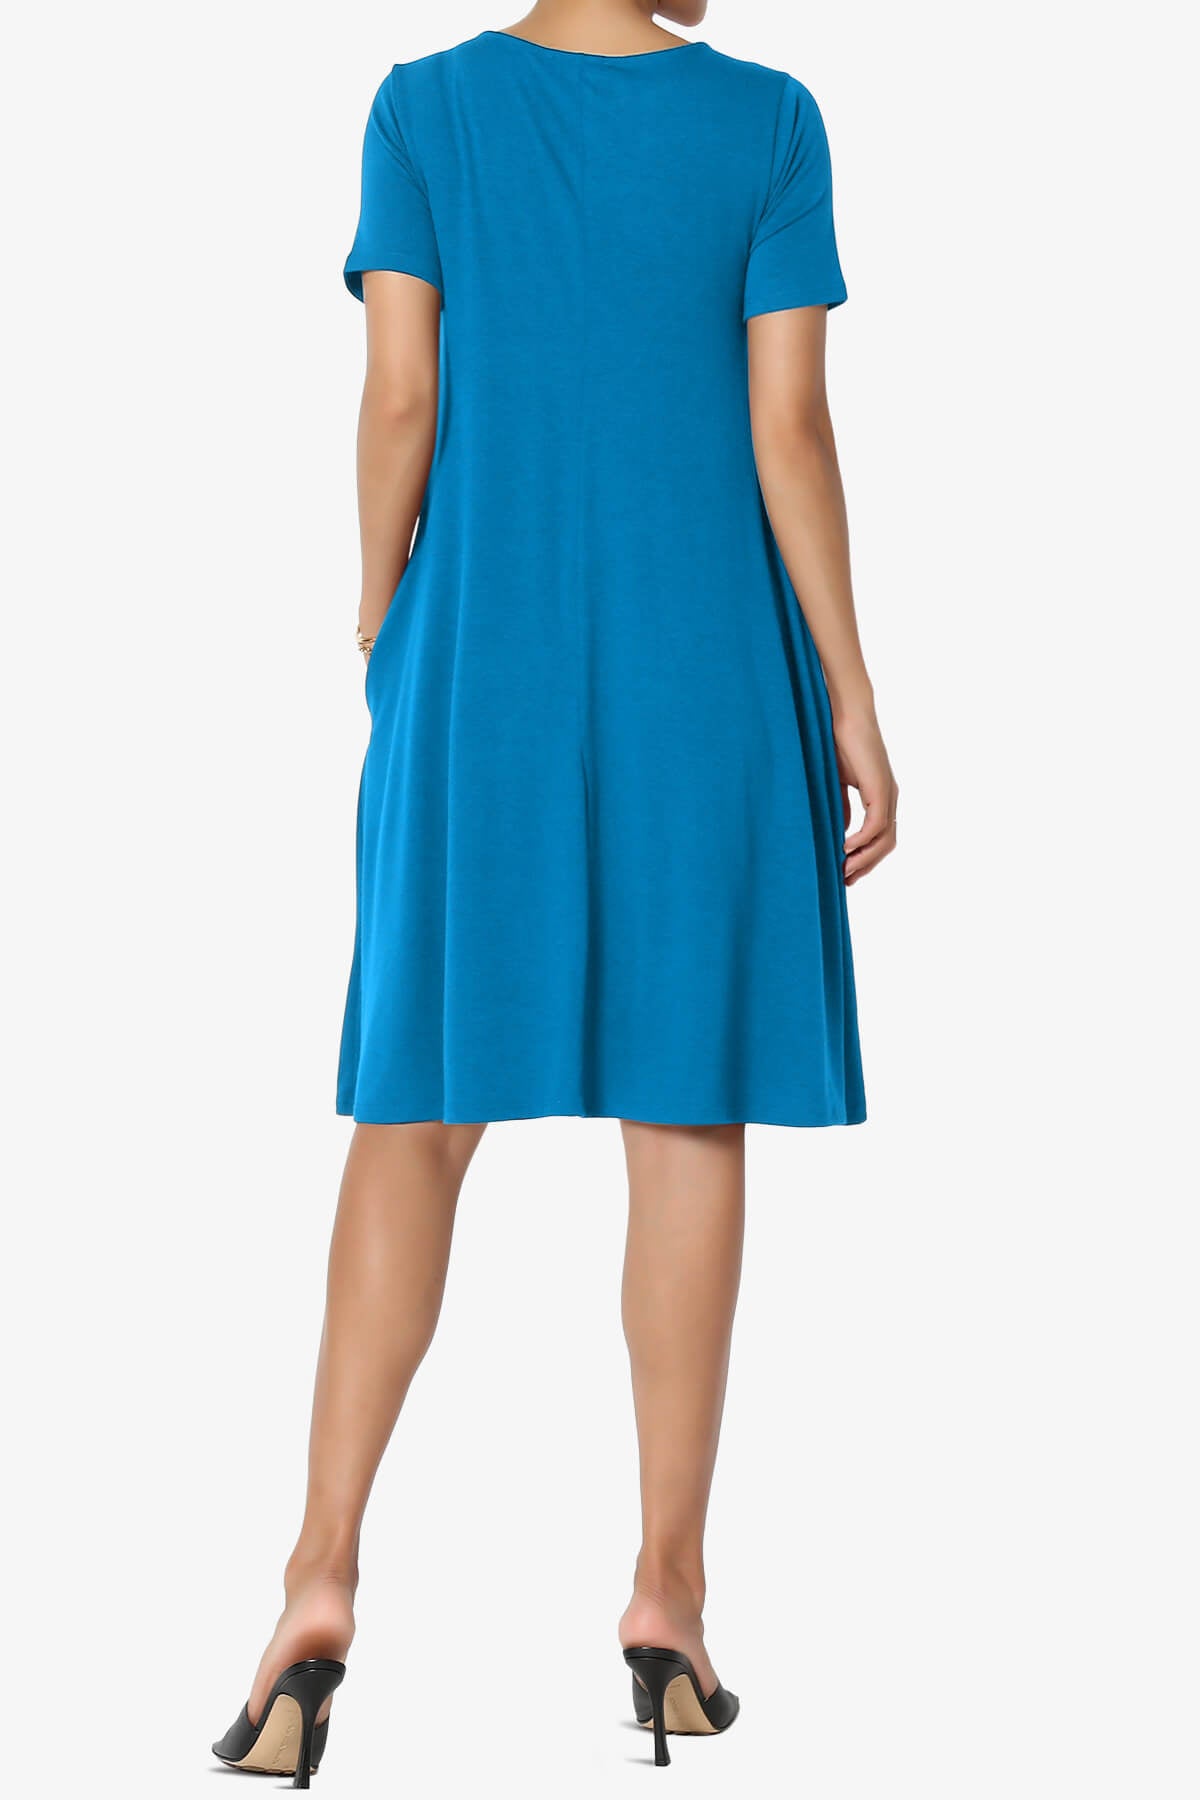 Allie Short Sleeve Jersey A-Line Dress OCEAN BLUE_2